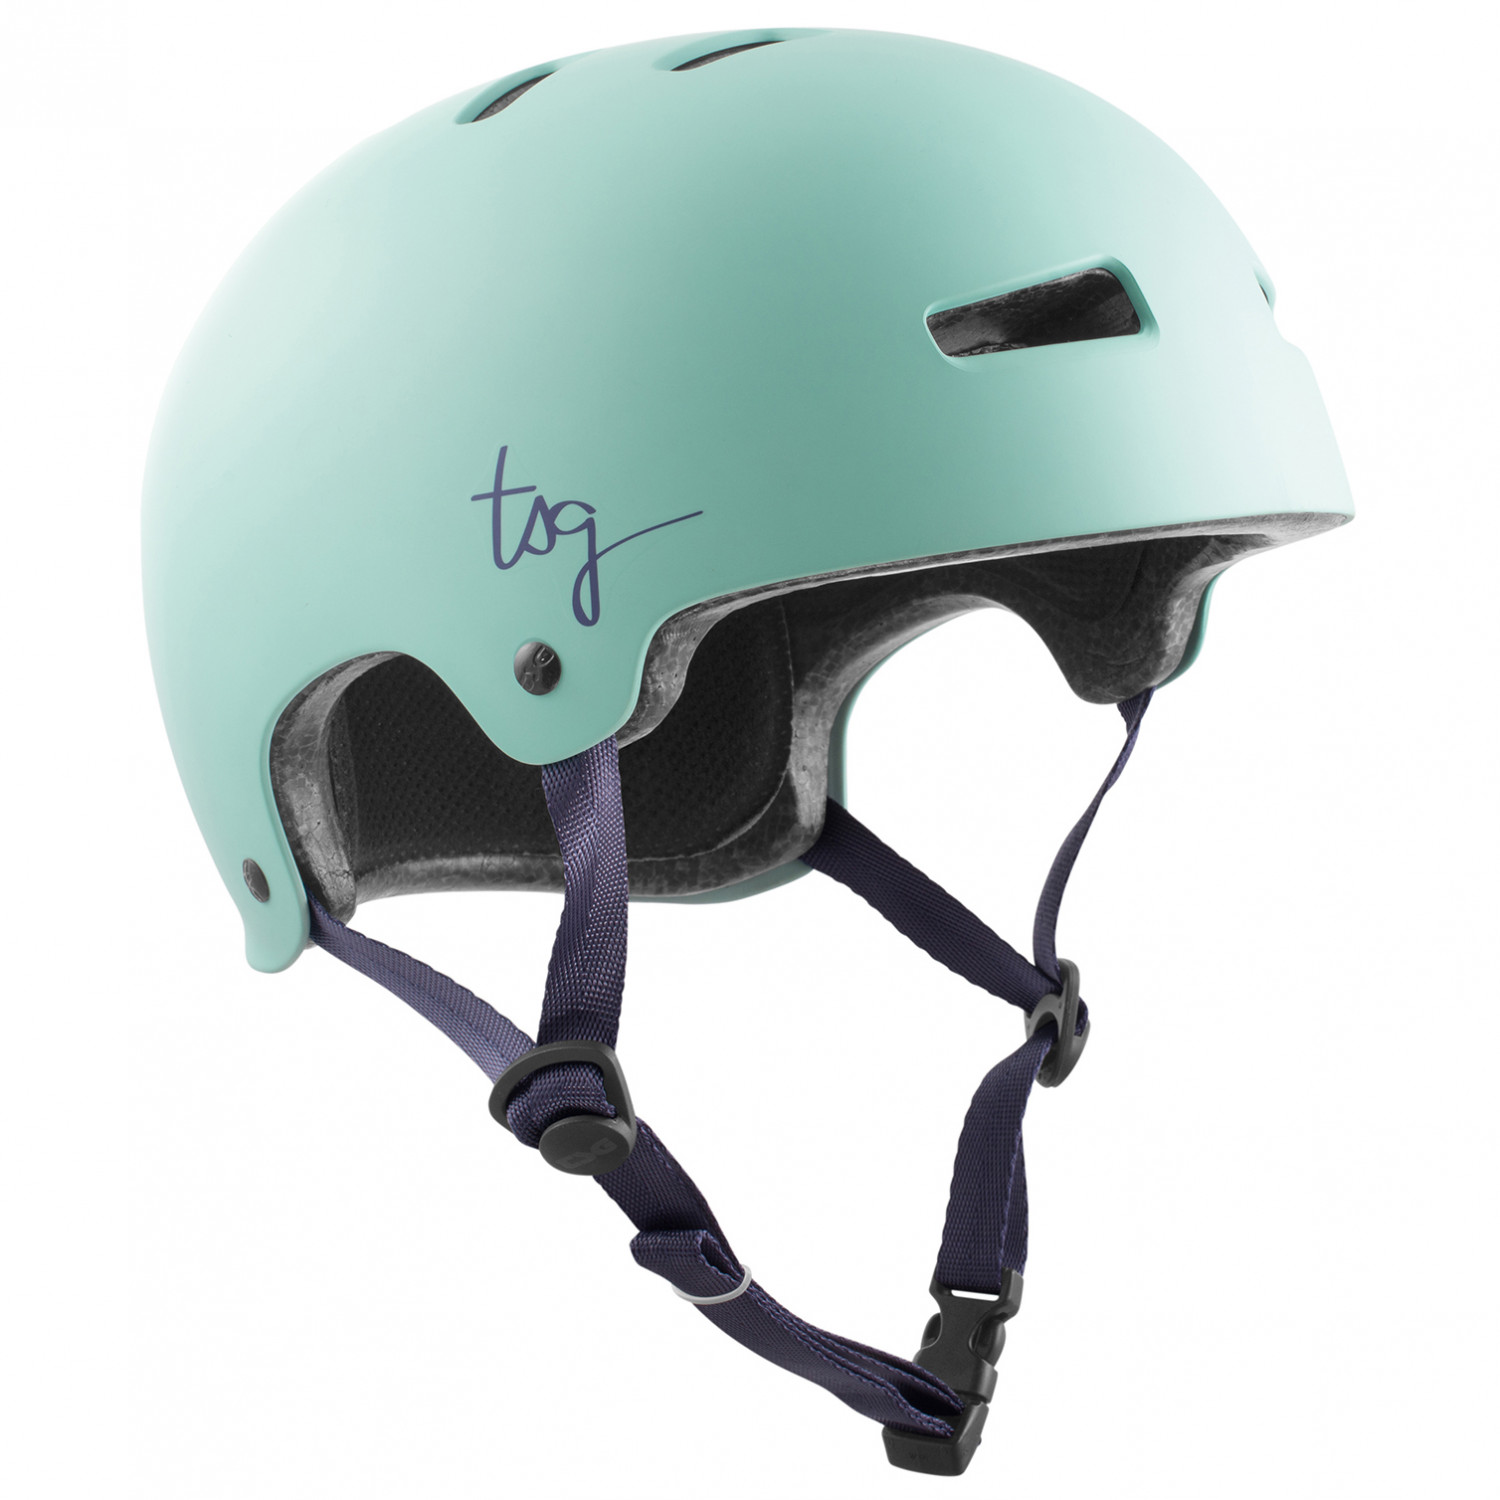 Велосипедный шлем Tsg Women's Evolution Solid Color, цвет Satin Mint